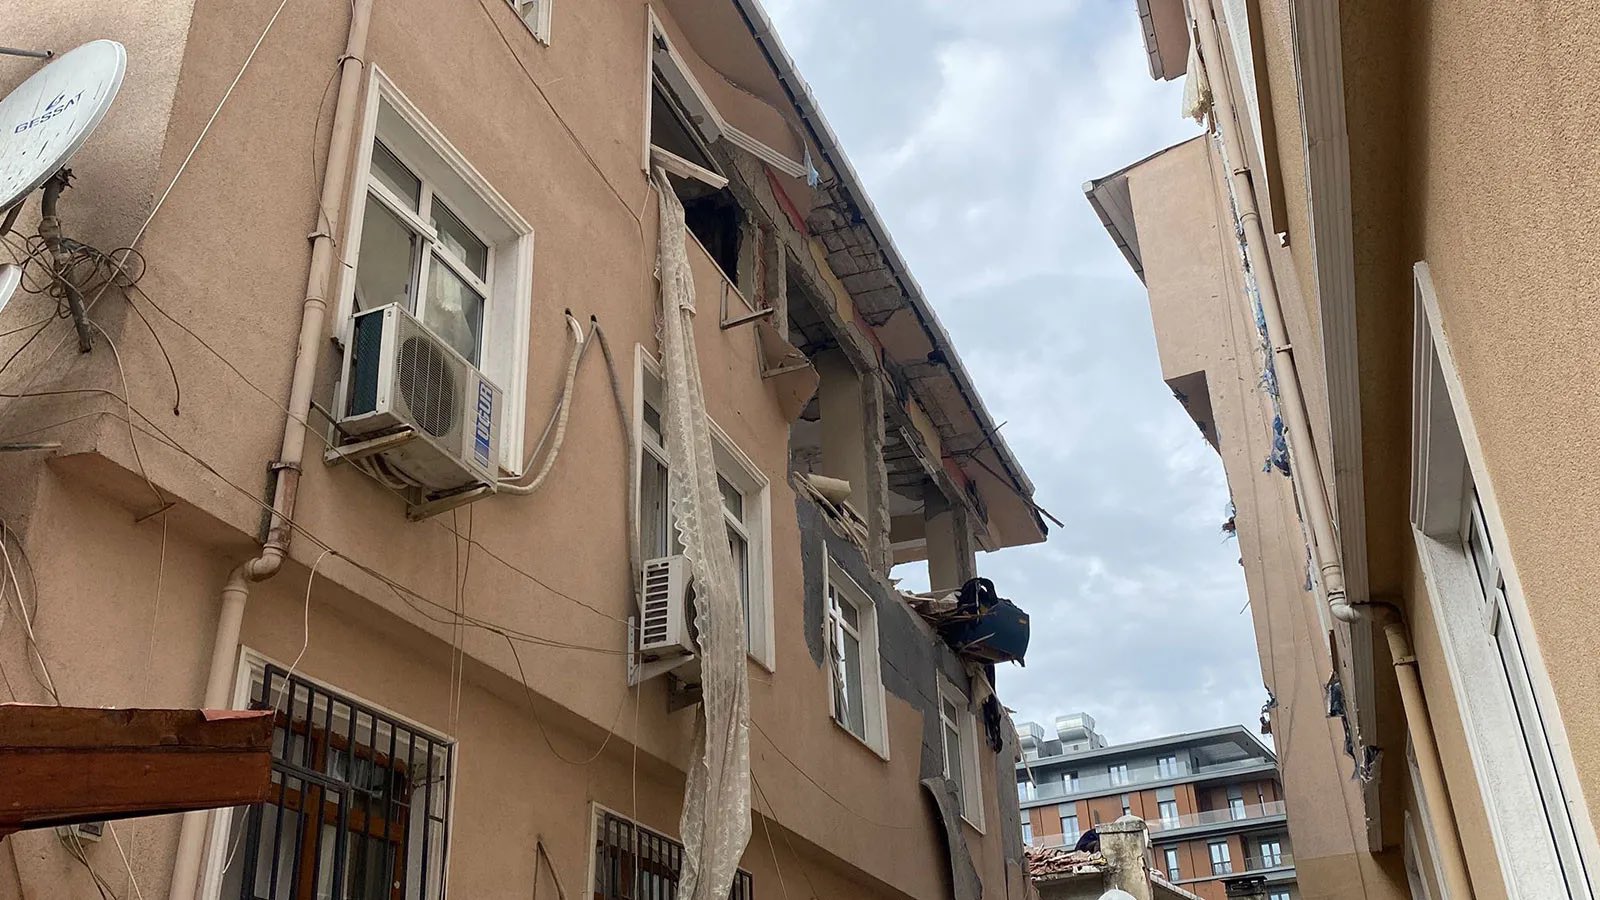 Son dakika | İstanbul'daki patlama hakkında yeni gelişme! Vali Yerlikaya yardım açıklamasında bulundu